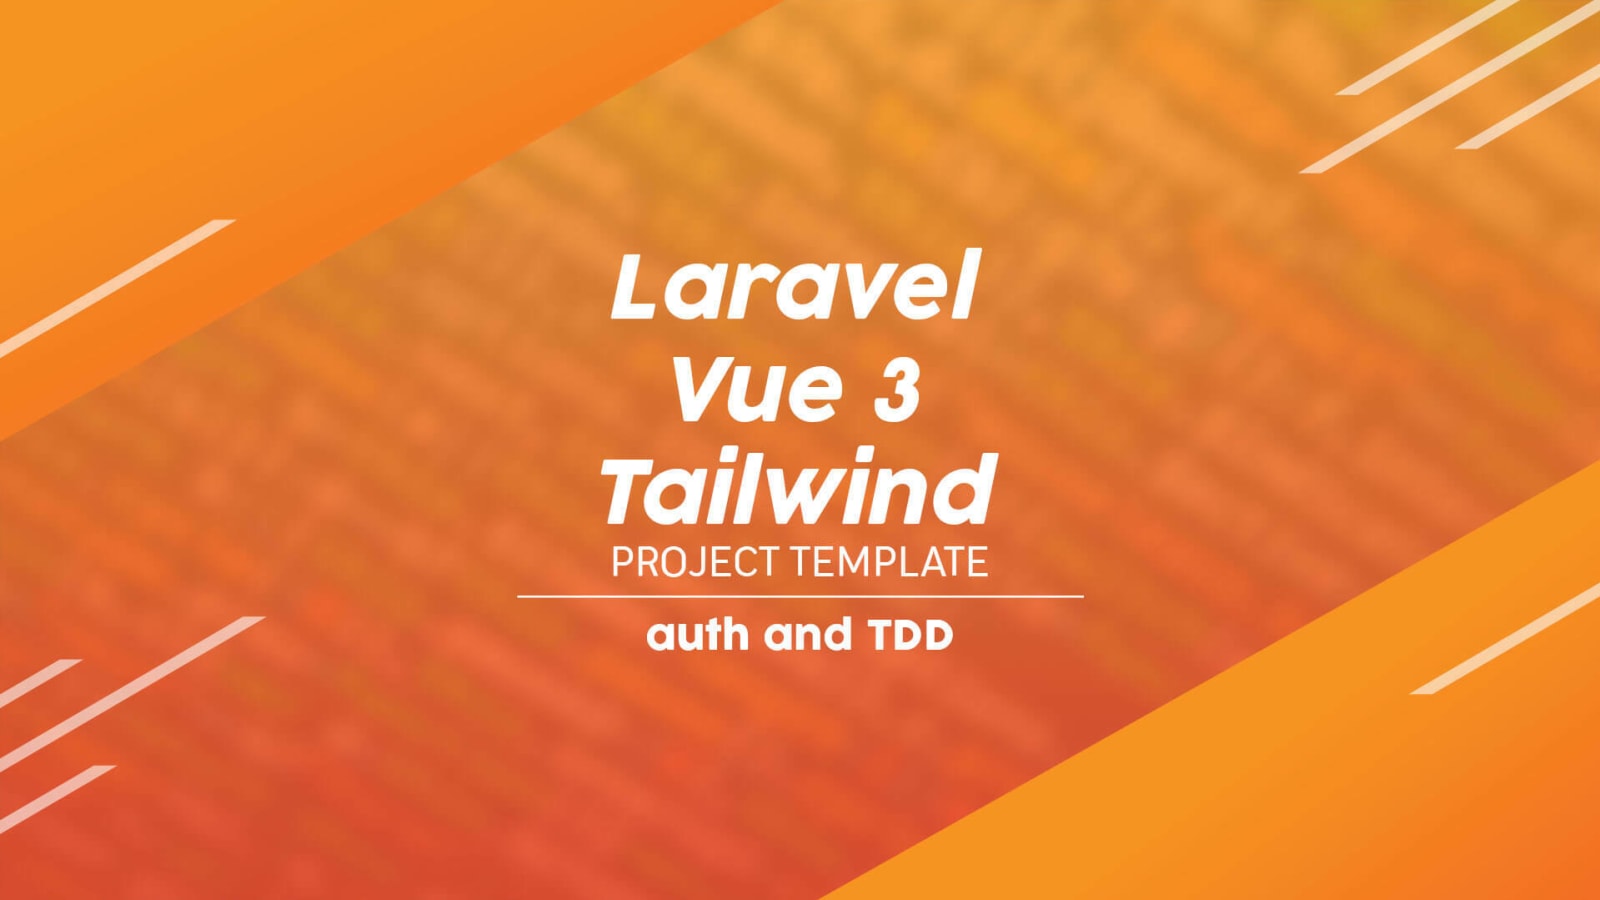 Tạo mẫu dự án sử dụng Laravel, Vue 3 và Tailwind CSS: Với các công nghệ mới nhất như Laravel, Vue 3 và Tailwind CSS, việc tạo ra một mẫu dự án đẹp và chuyên nghiệp chưa bao giờ dễ dàng hơn thế. Đặc biệt, sự kết hợp của các công nghệ này giúp cho người dùng có trải nghiệm sử dụng dự án tối đa và đáp ứng được mọi nhu cầu của họ. Bất cứ ai cũng có thể tiếp cận và sử dụng các công nghệ này để tạo ra những dự án chất lượng và mang lại hiệu quả cao.